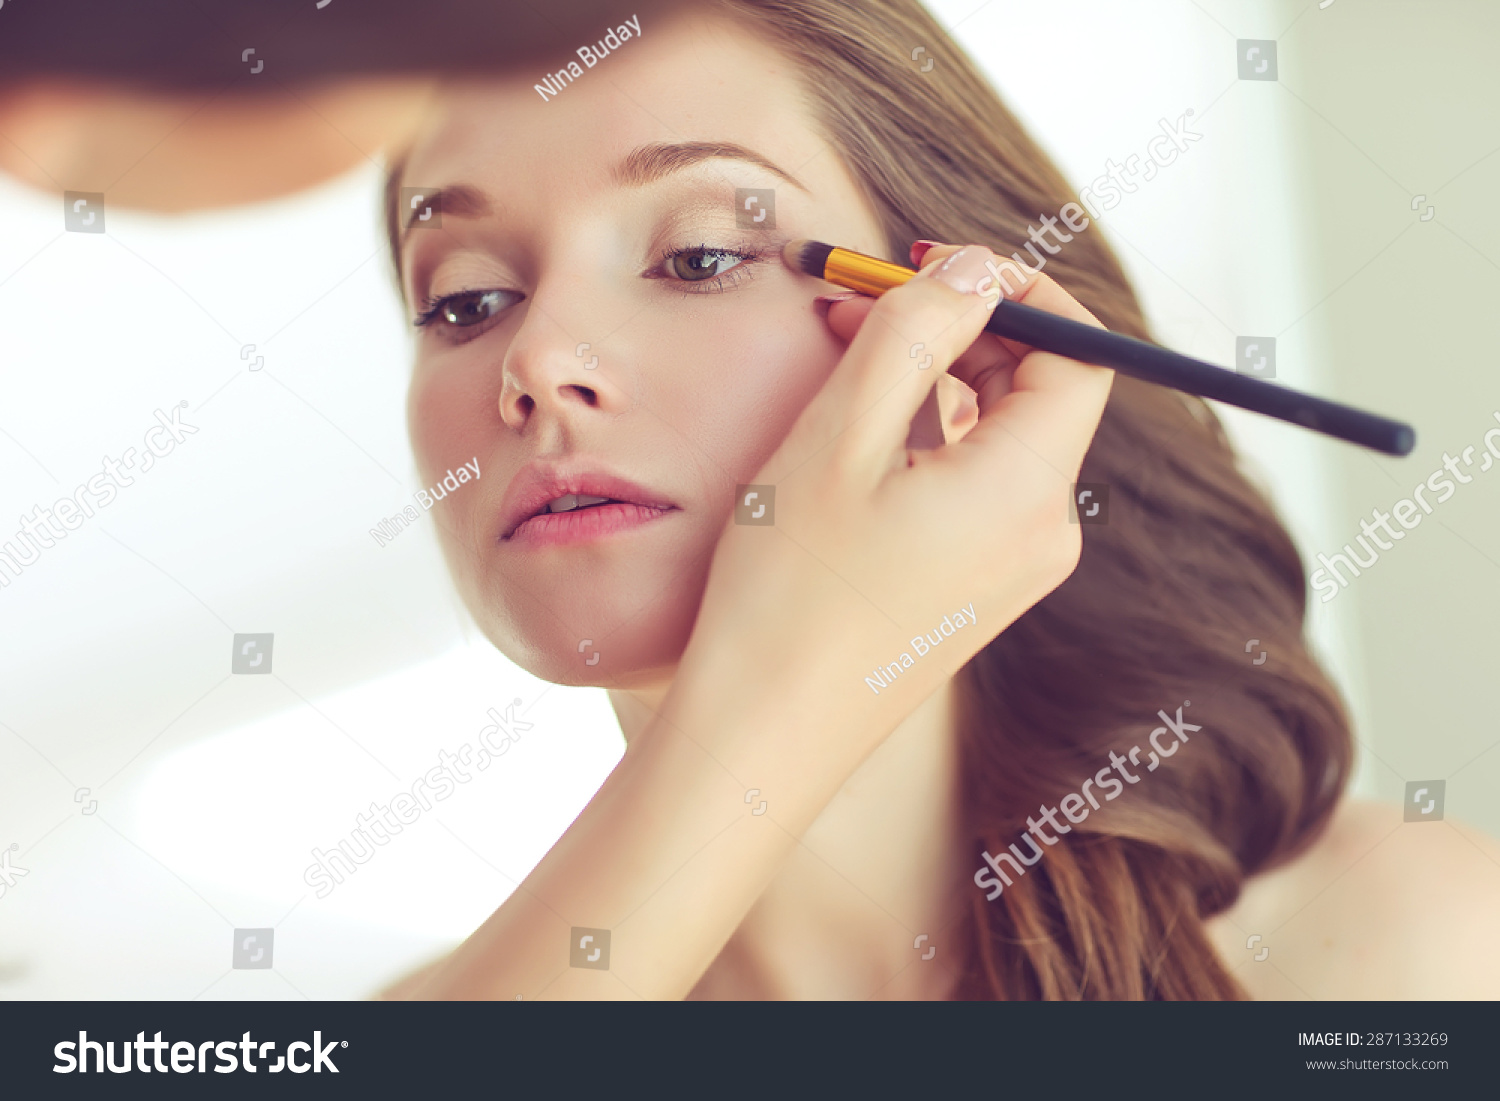 Backstage scene: Professional Make-up artist doing glamour model makeup at work  #287133269